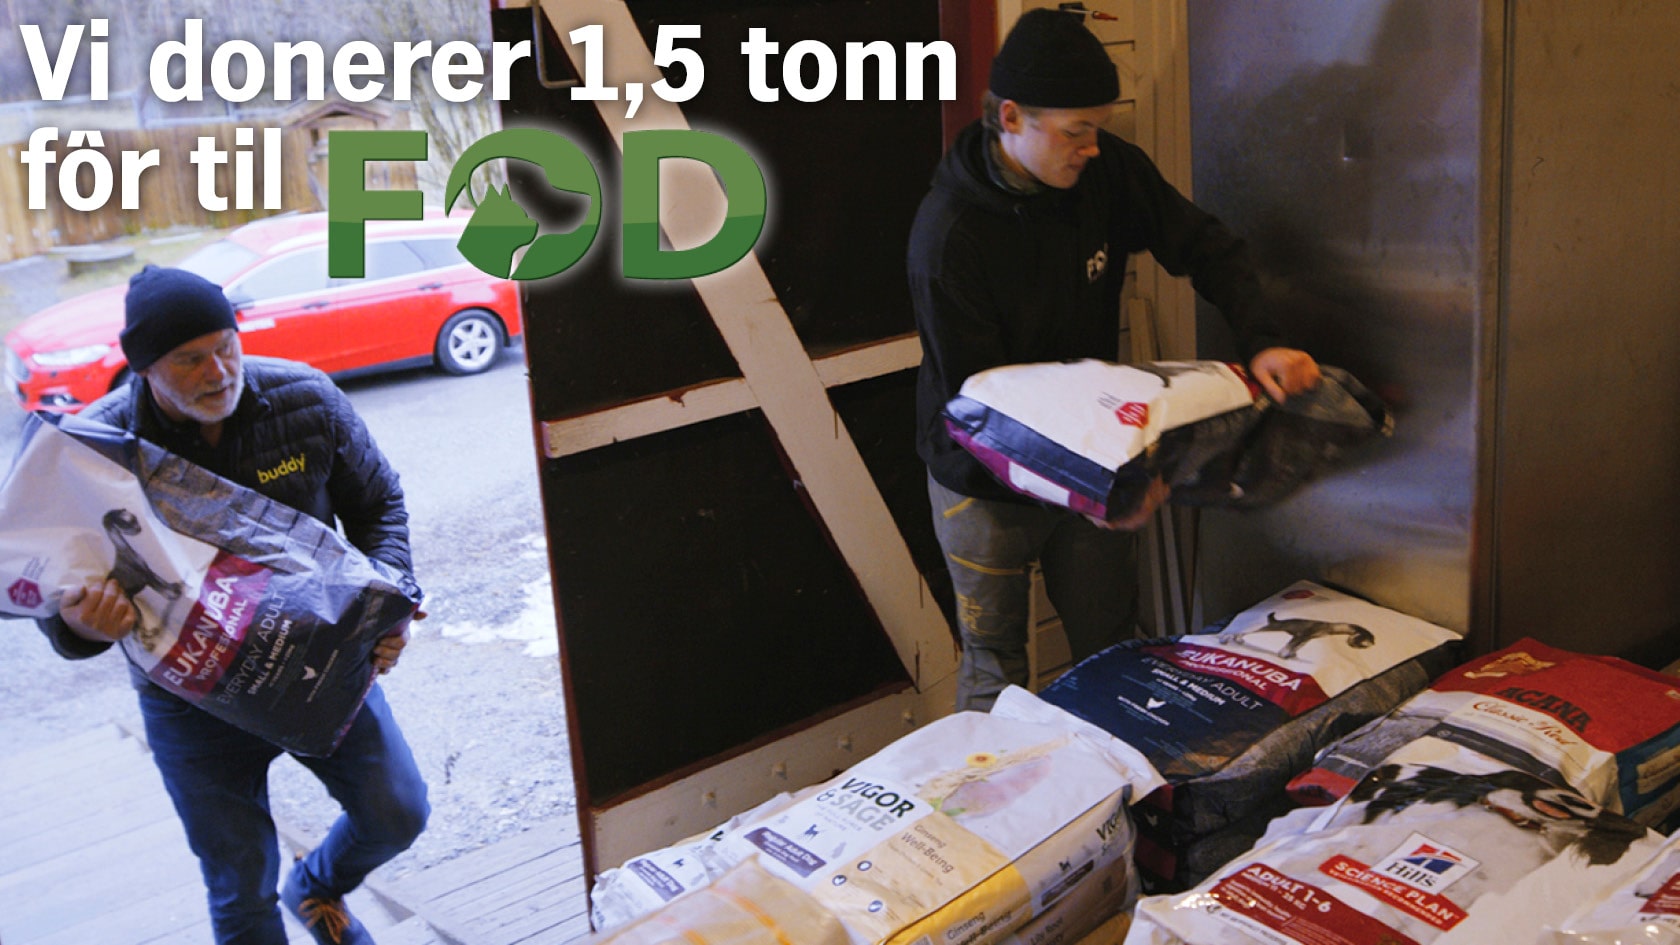 Avbildet: Buddy donerer 1,5 tonn fôr til FOD-gården - fôret bæres inn på lageret - Les mer her!